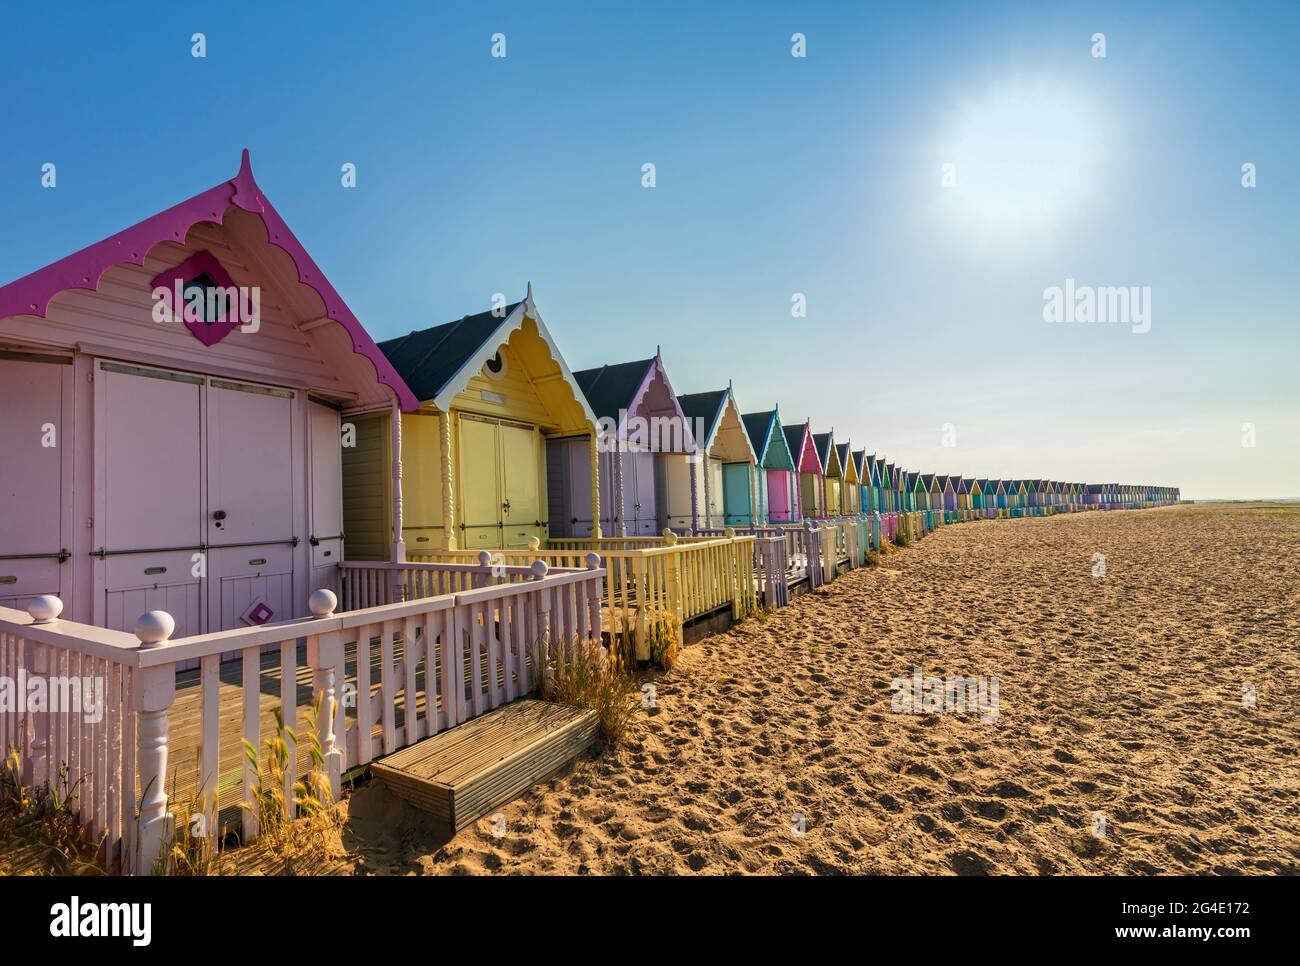 Cabañas de playa de colores pastel, Mersea Island, Essex, Reino Unido. Foto de stock